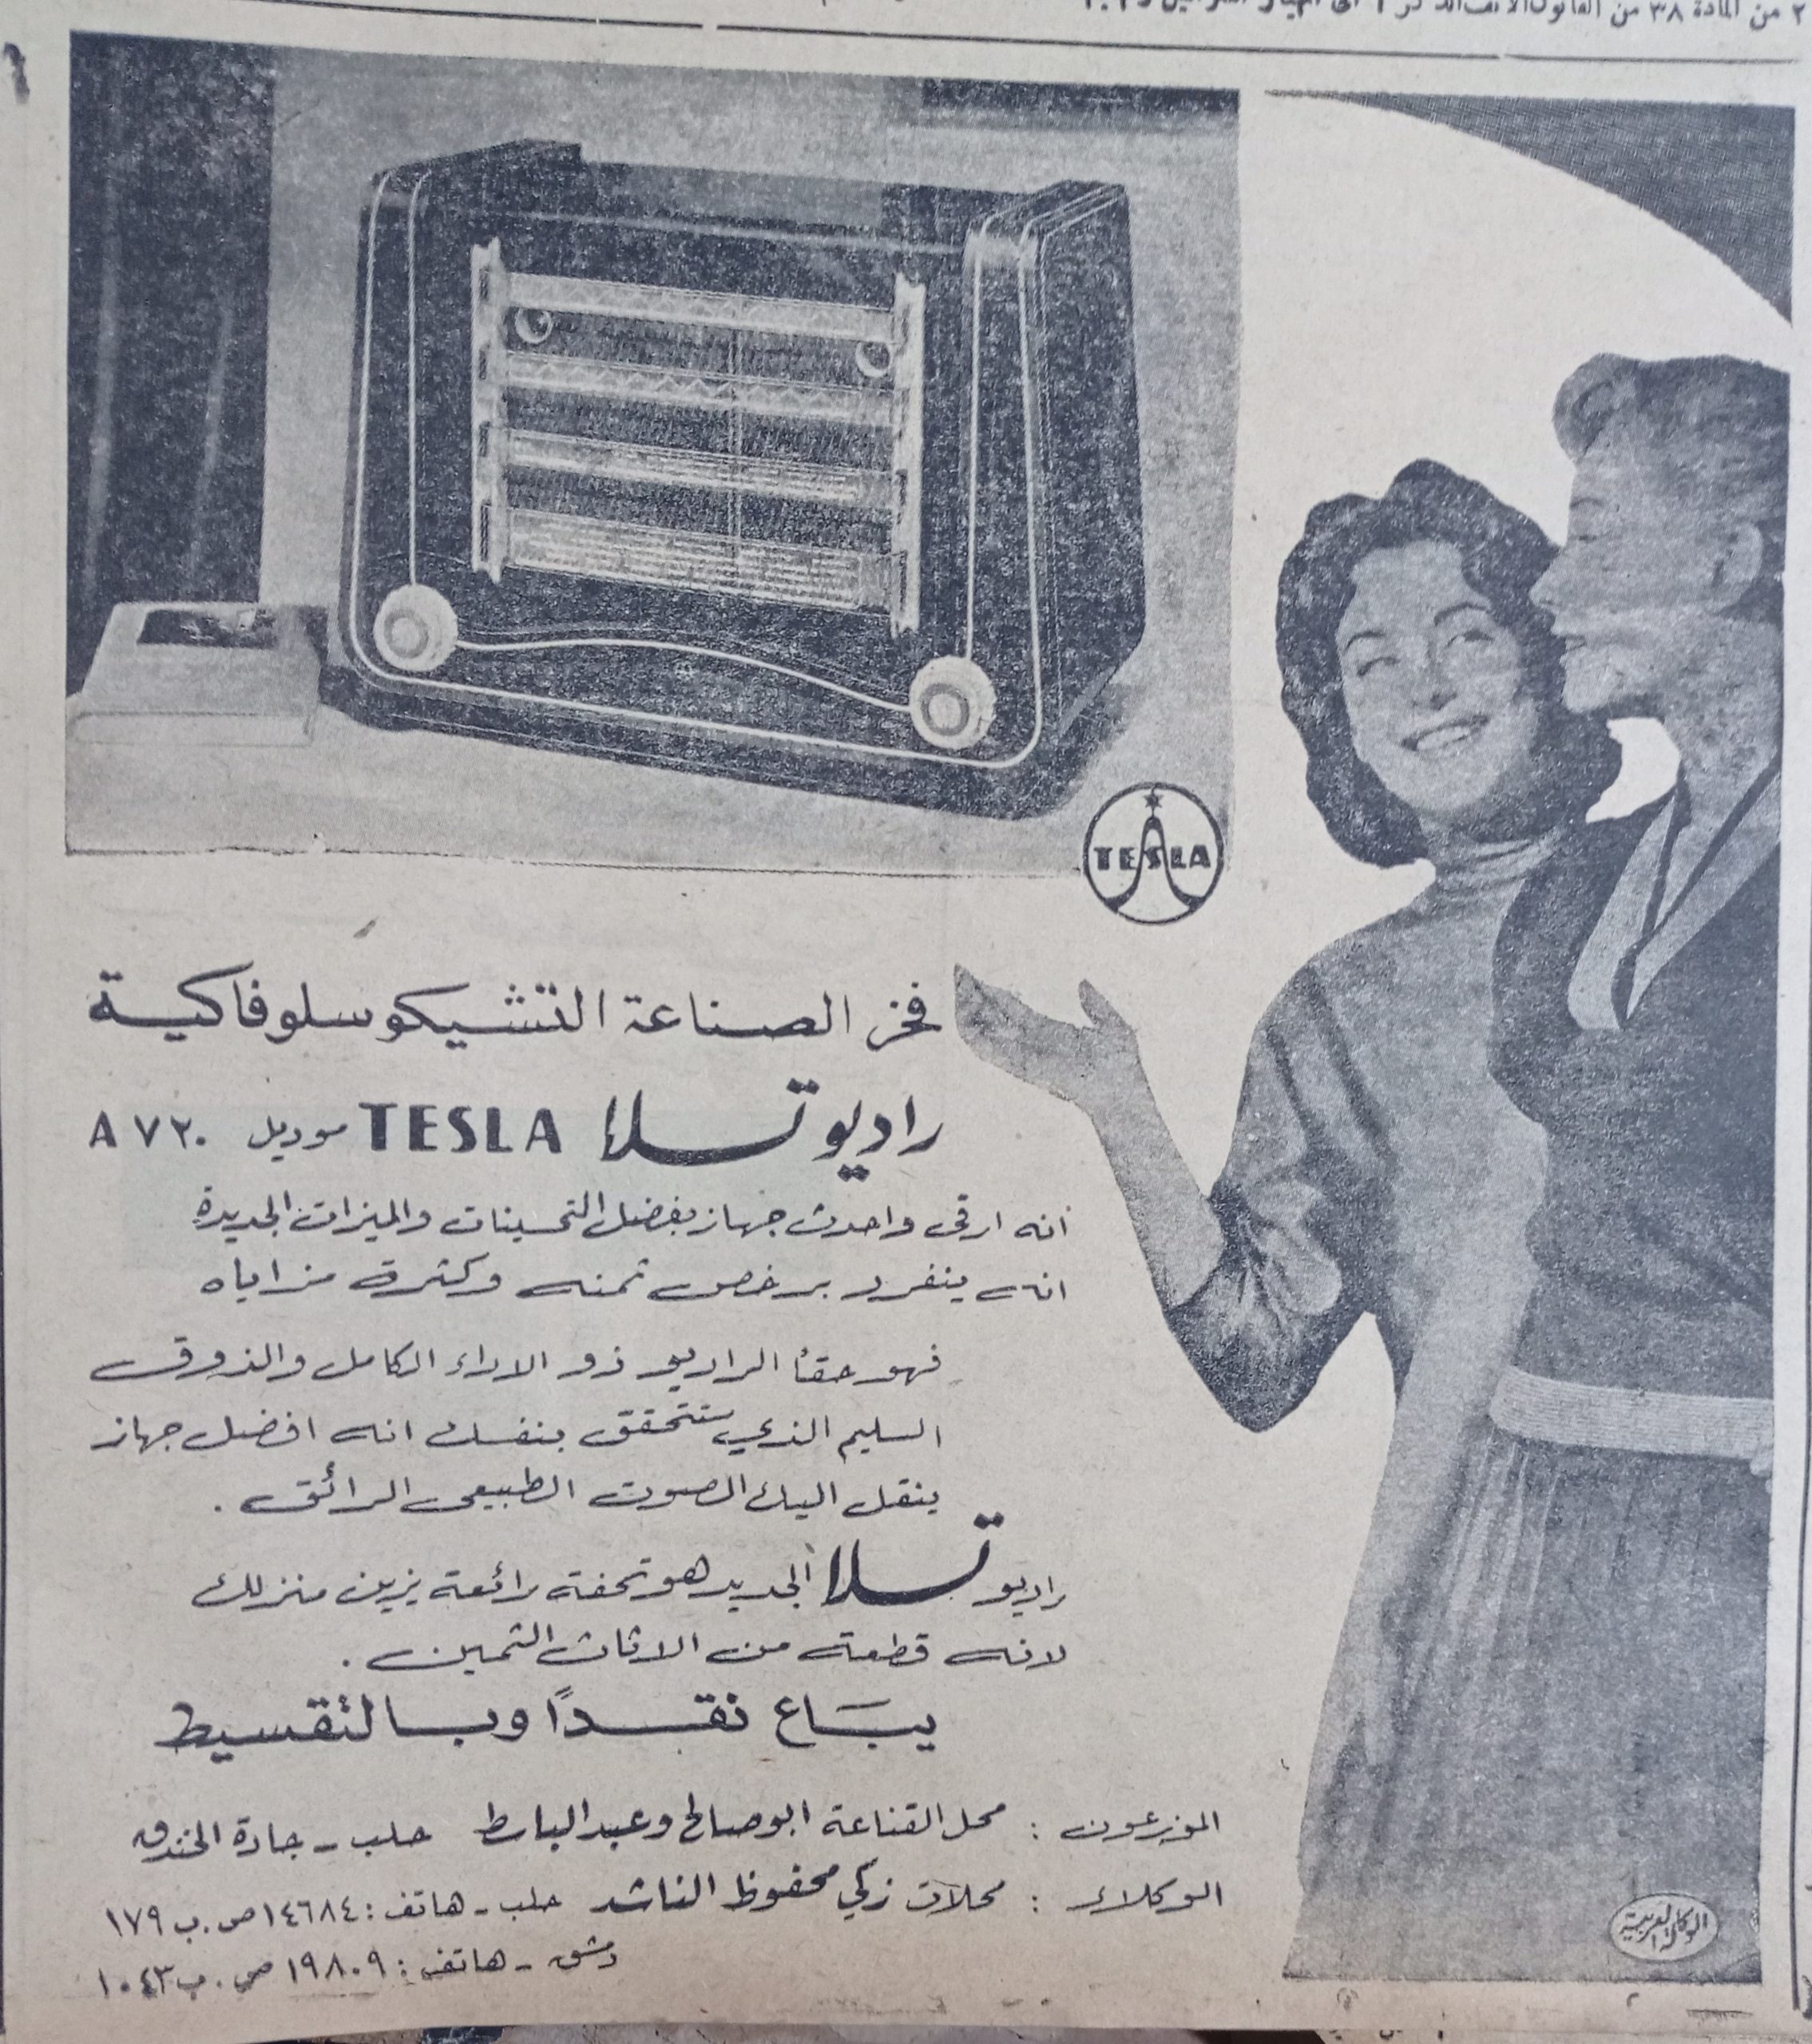 التاريخ السوري المعاصر - إعلان عن جهاز راديو تسلا TESLA في حلب عام 1956